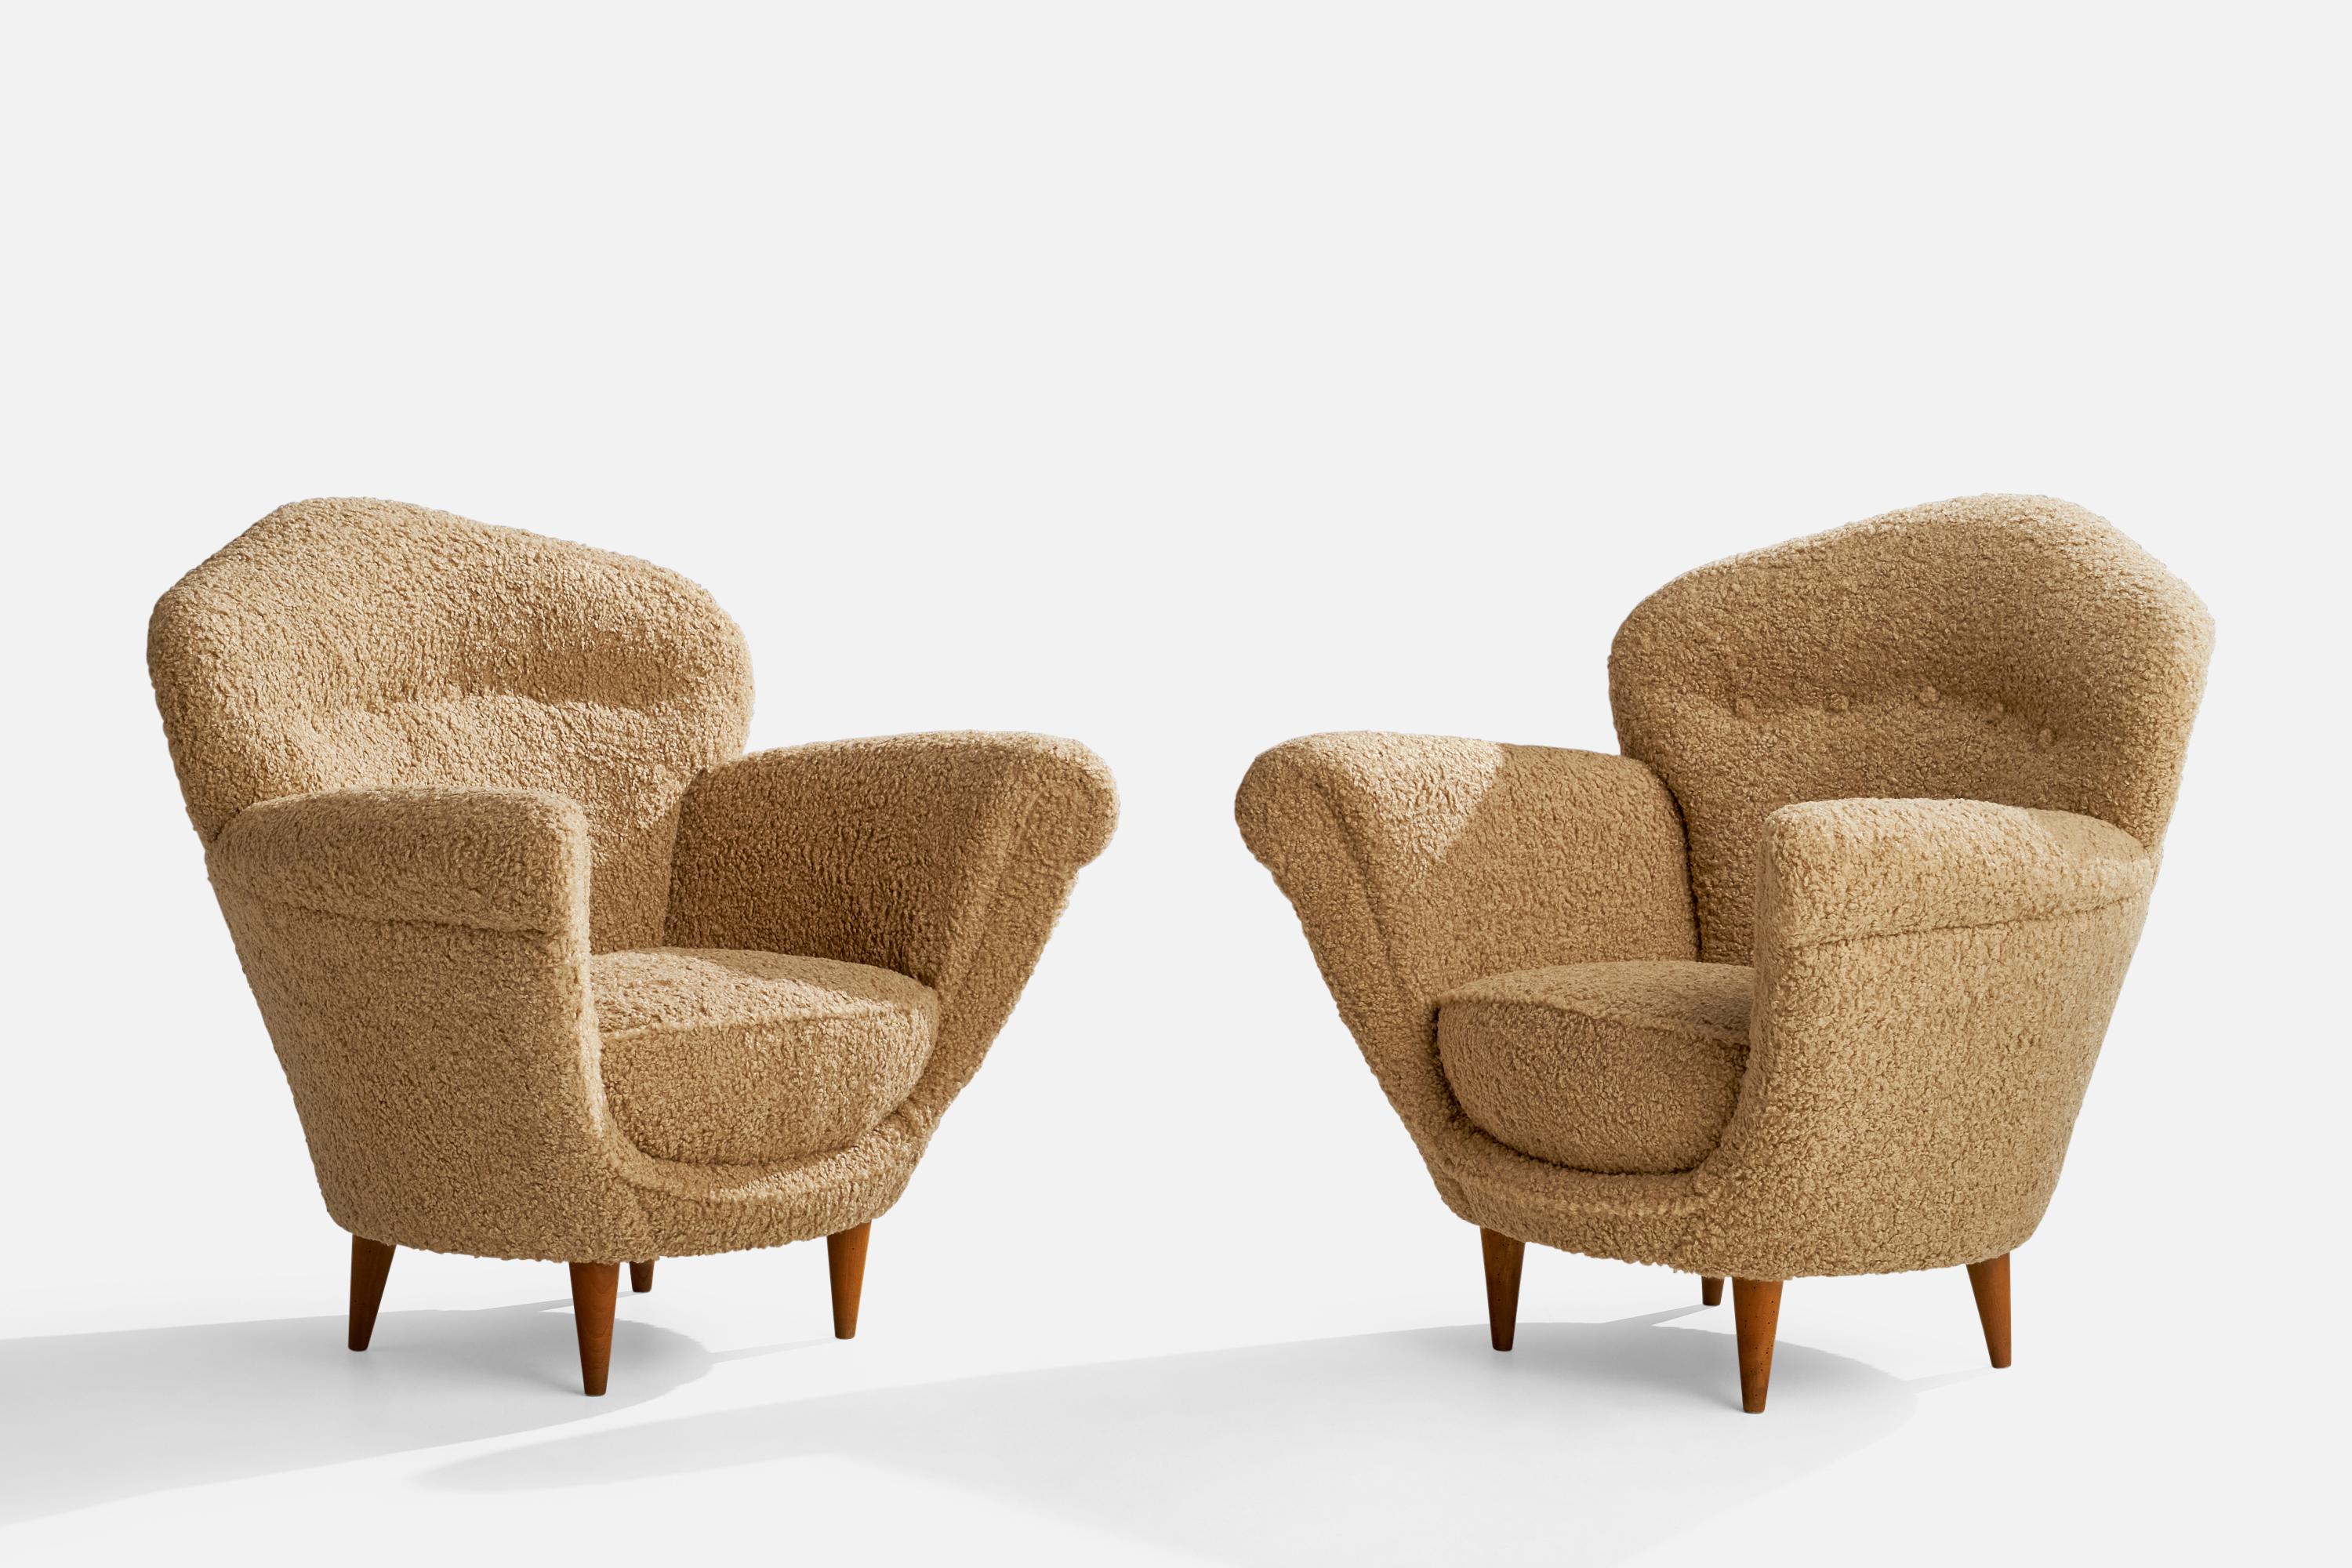 Ein Paar Sessel aus Holz und beigem Bouclé-Stoff, entworfen und hergestellt in Italien, 1940er Jahre.

Sitzhöhe 15,5